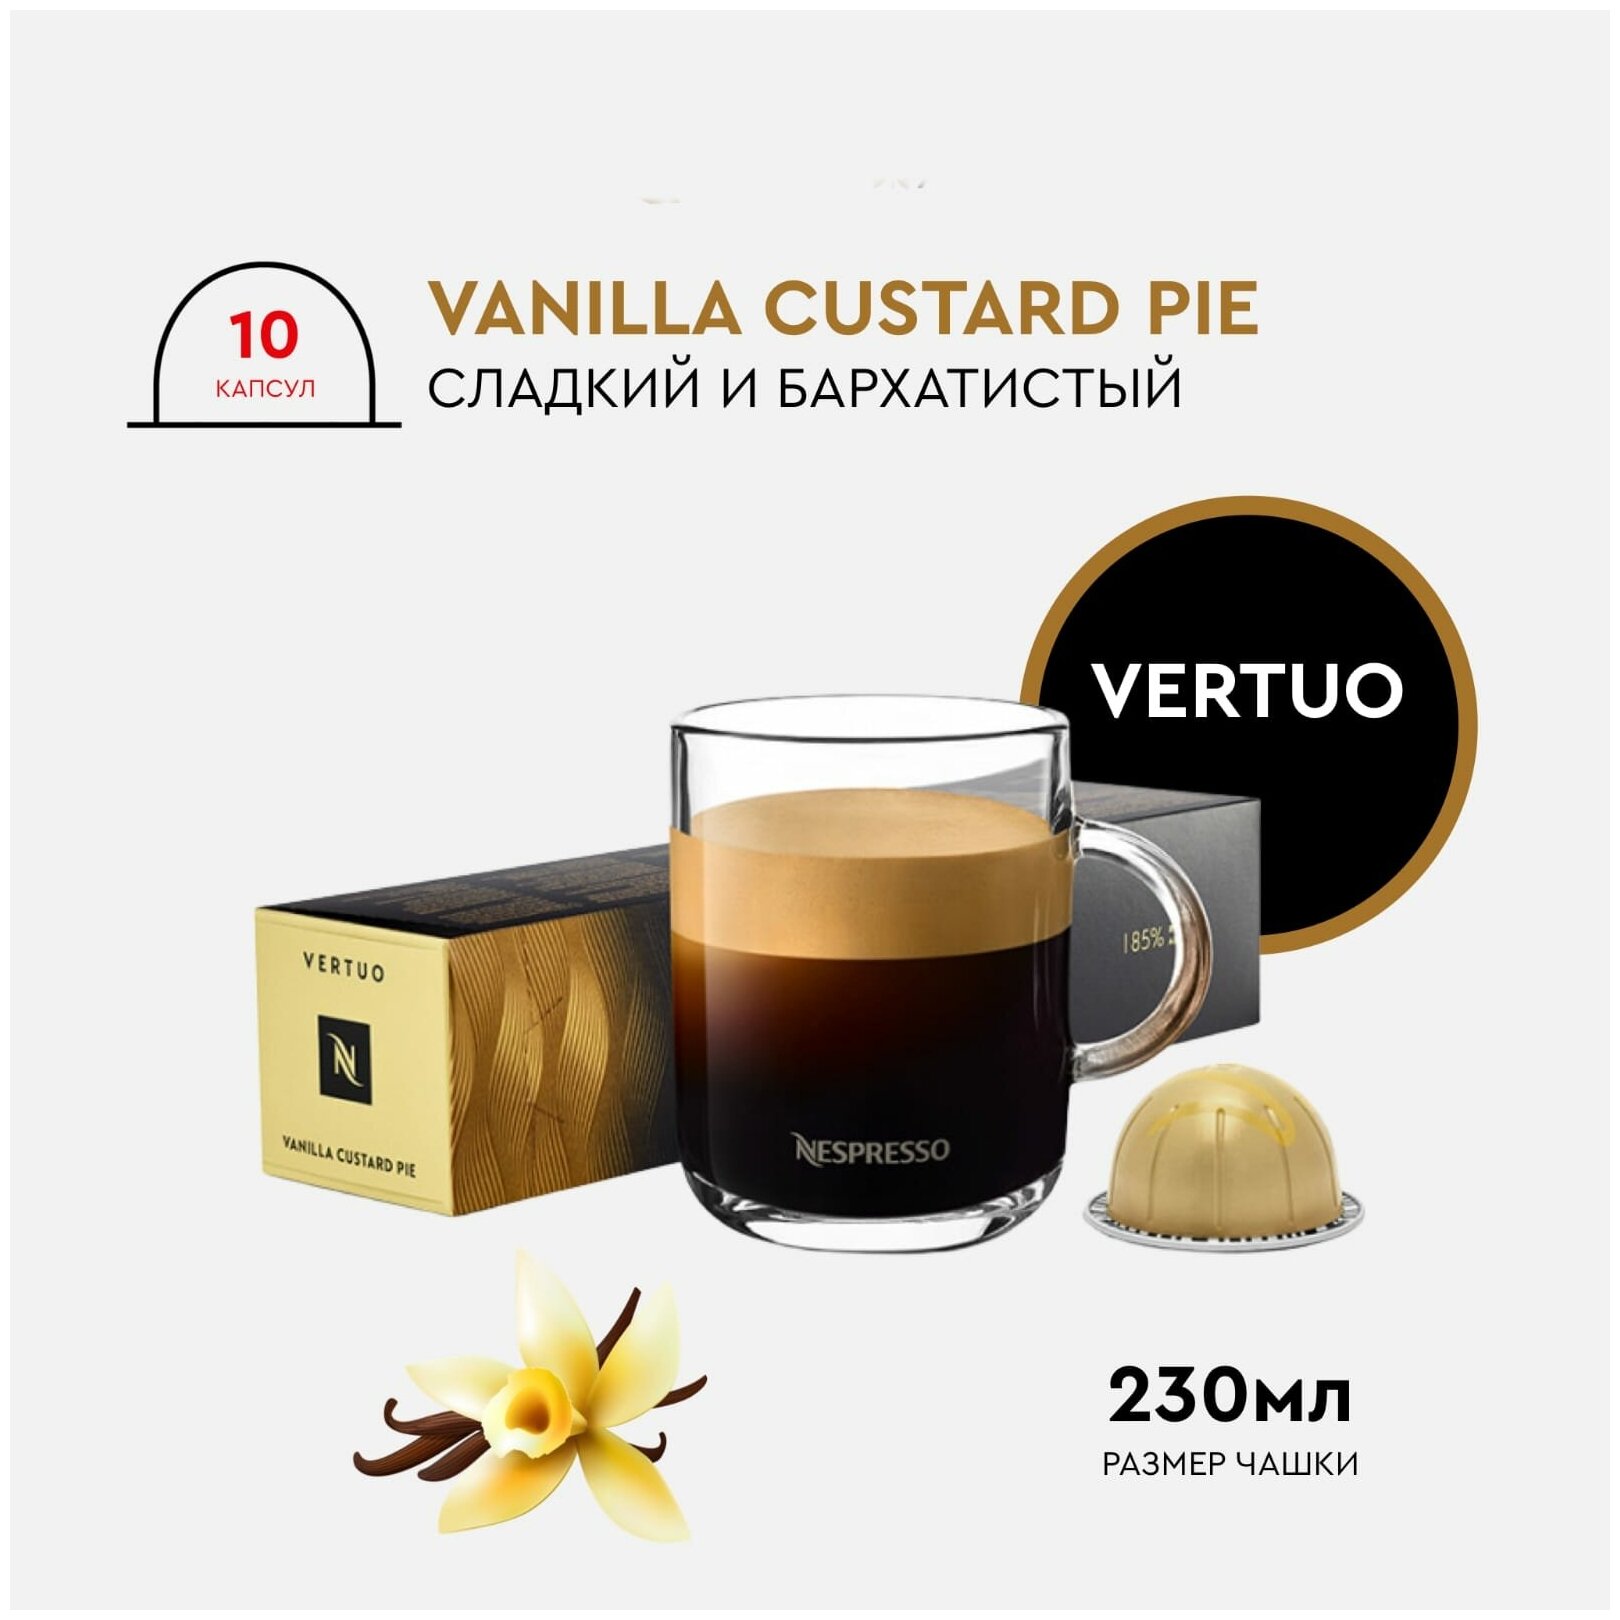 Кофе в капсулах Nespresso Vertuo, VANILLA CUSTARD PIE, 230ml, натуральный, молотый кофе в капсулах, для капсульных кофемашин, неспрессо , 10шт - фотография № 1